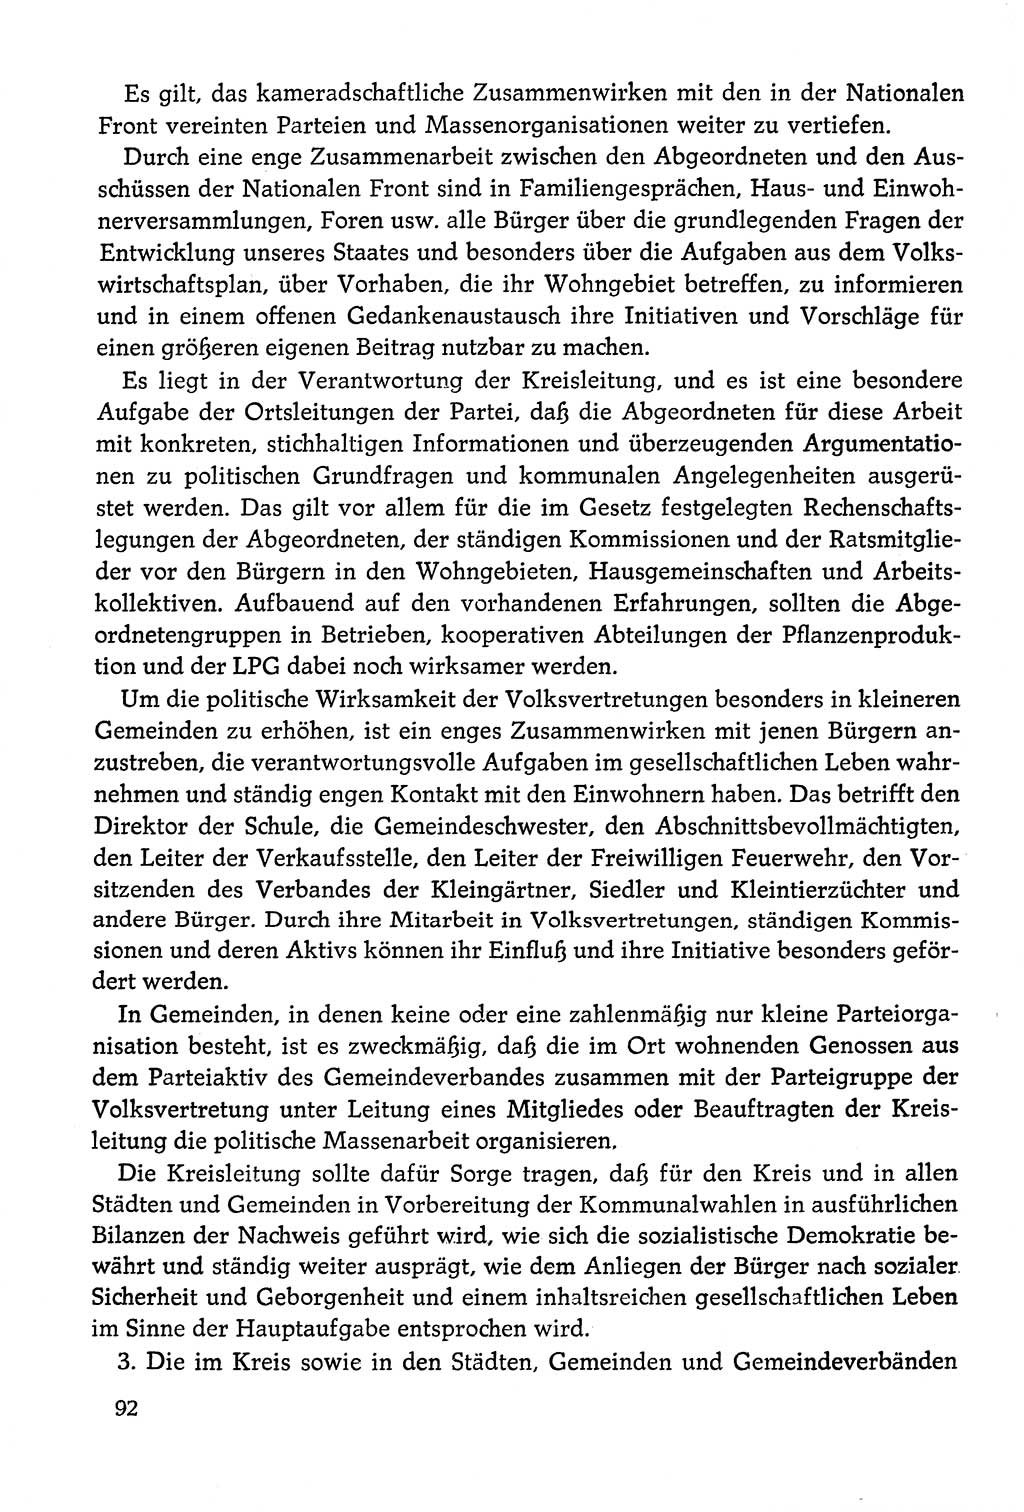 Dokumente der Sozialistischen Einheitspartei Deutschlands (SED) [Deutsche Demokratische Republik (DDR)] 1978-1979, Seite 92 (Dok. SED DDR 1978-1979, S. 92)